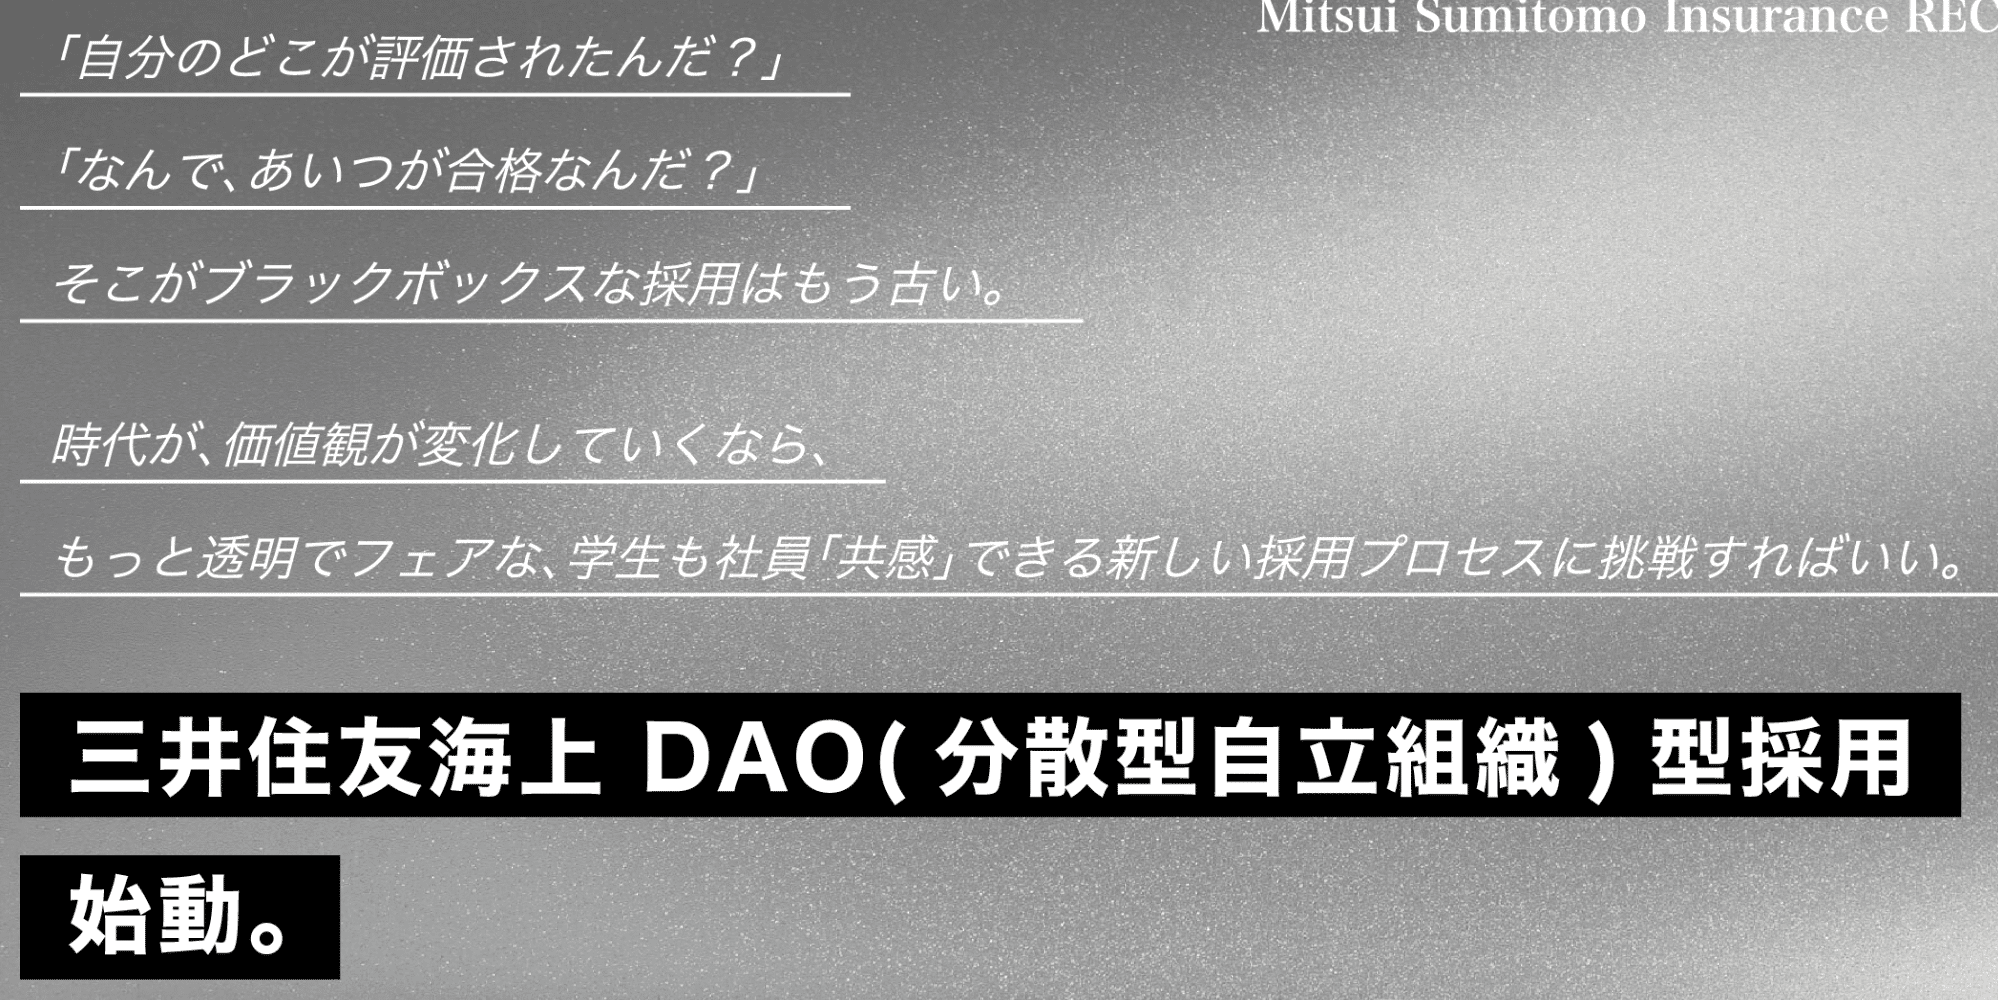 【伊藤が解説】三井住友保険の就職活動DAOとAI活用の未来